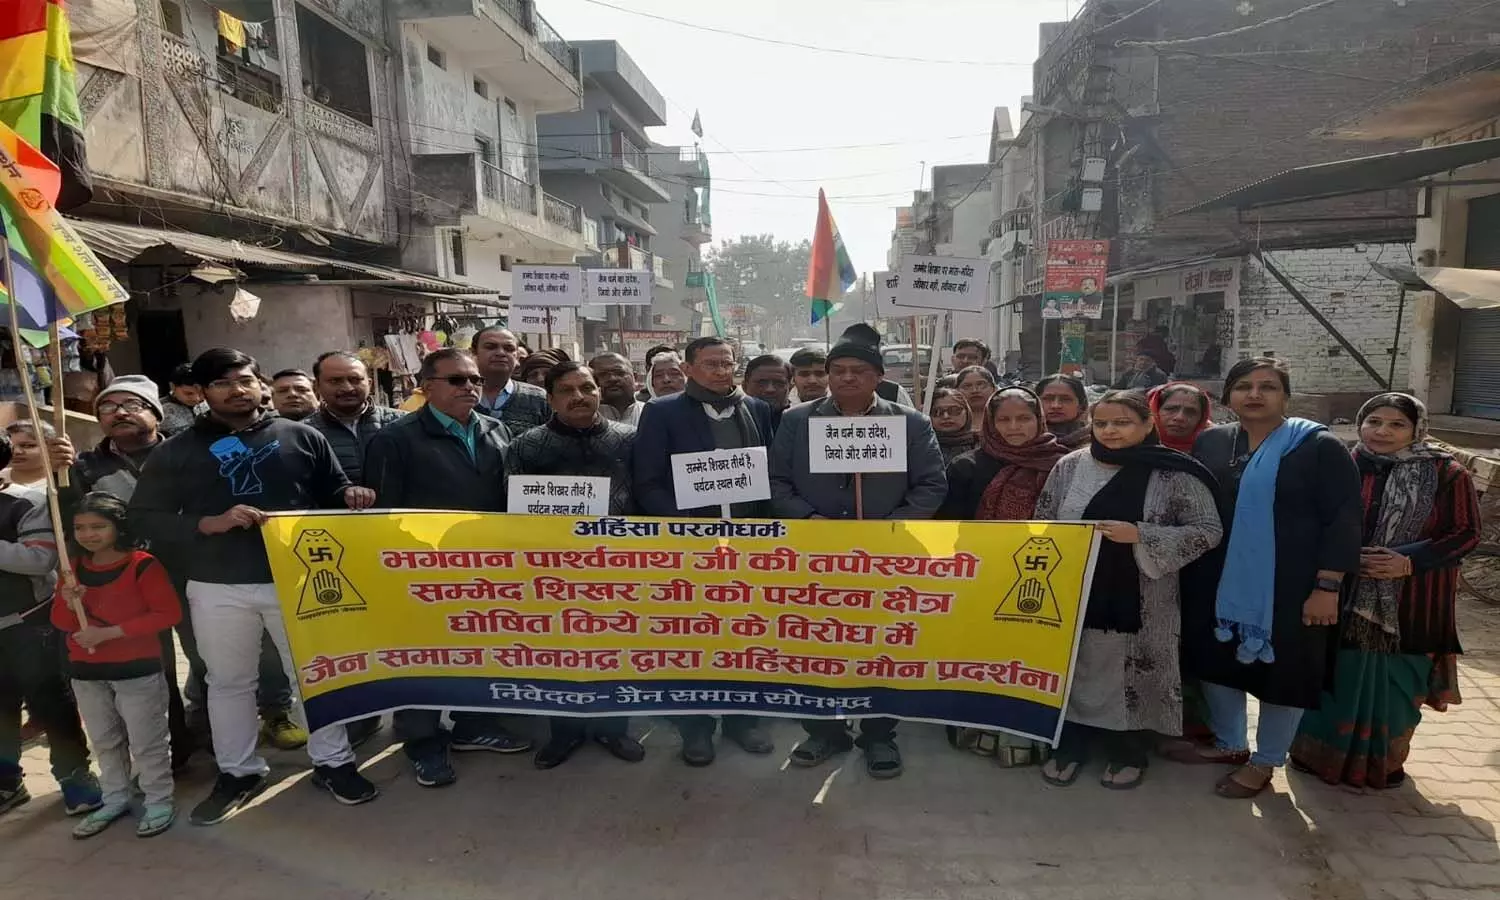 Sonbhadra News: सम्मेद शिखर मामला- जैन समाज ने निकाला जुलूस, पर्यटन स्थल घोषित करने का जताया विरोध